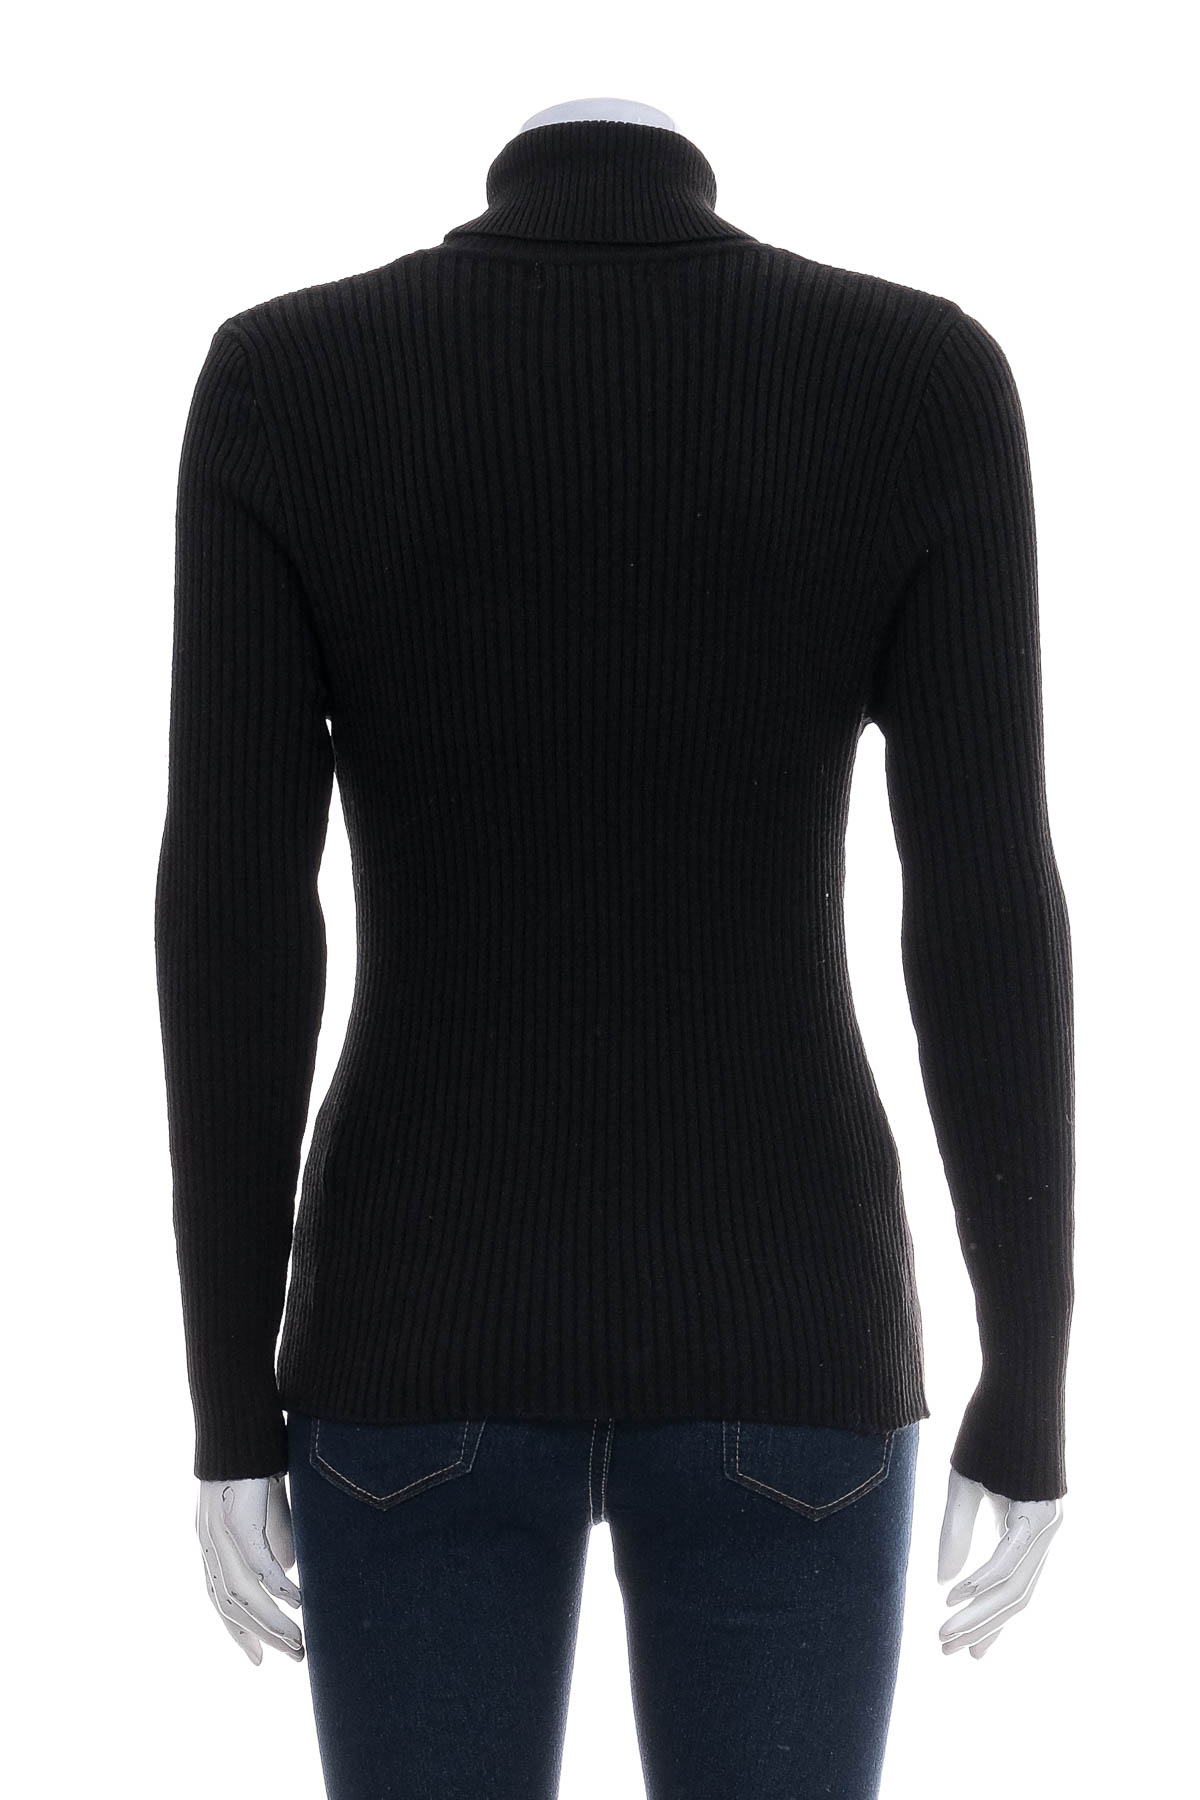 Women's sweater - KnitWell - 1